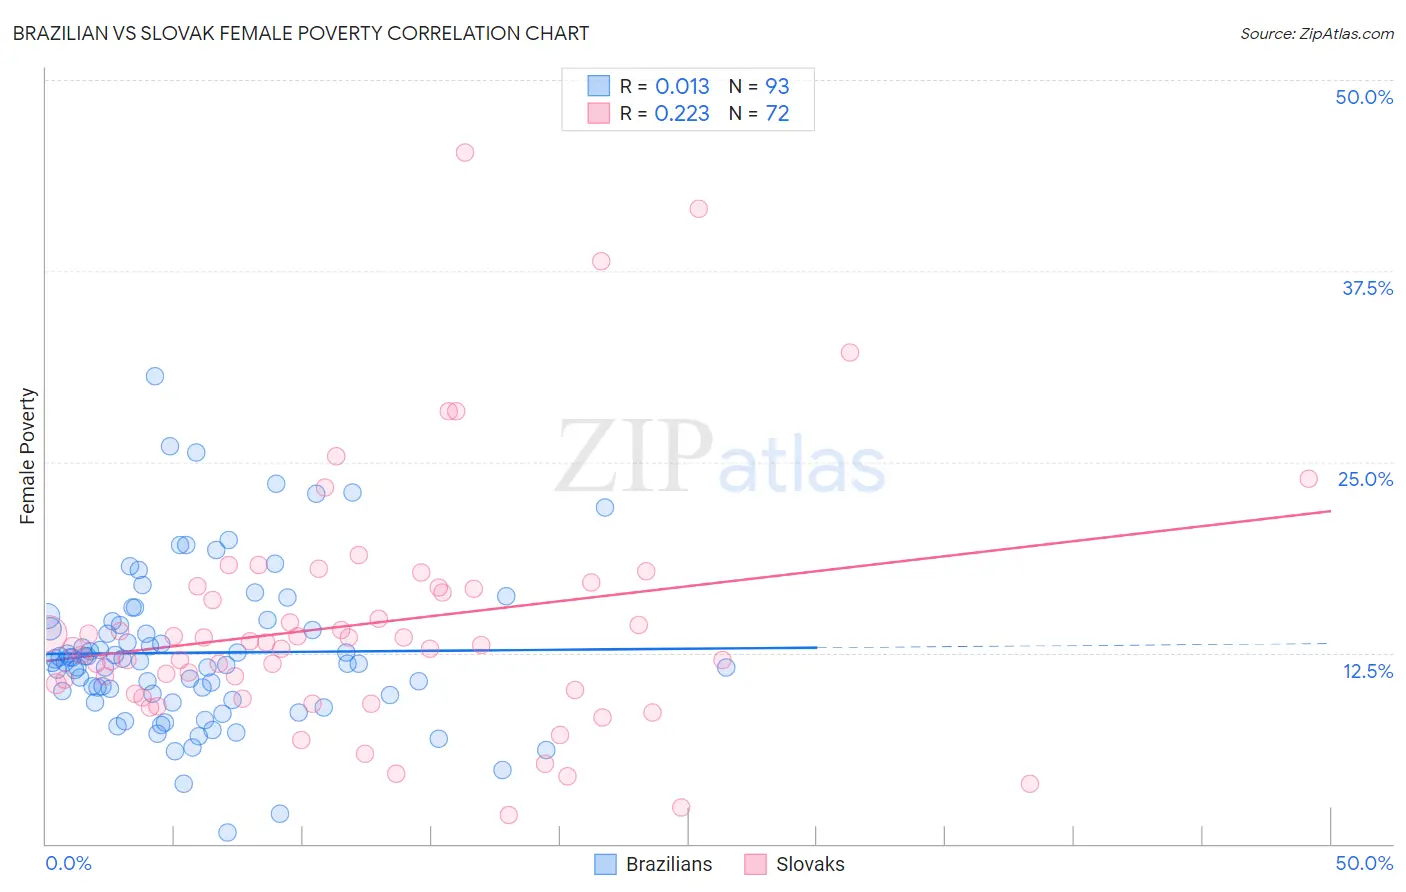 Brazilian vs Slovak Female Poverty